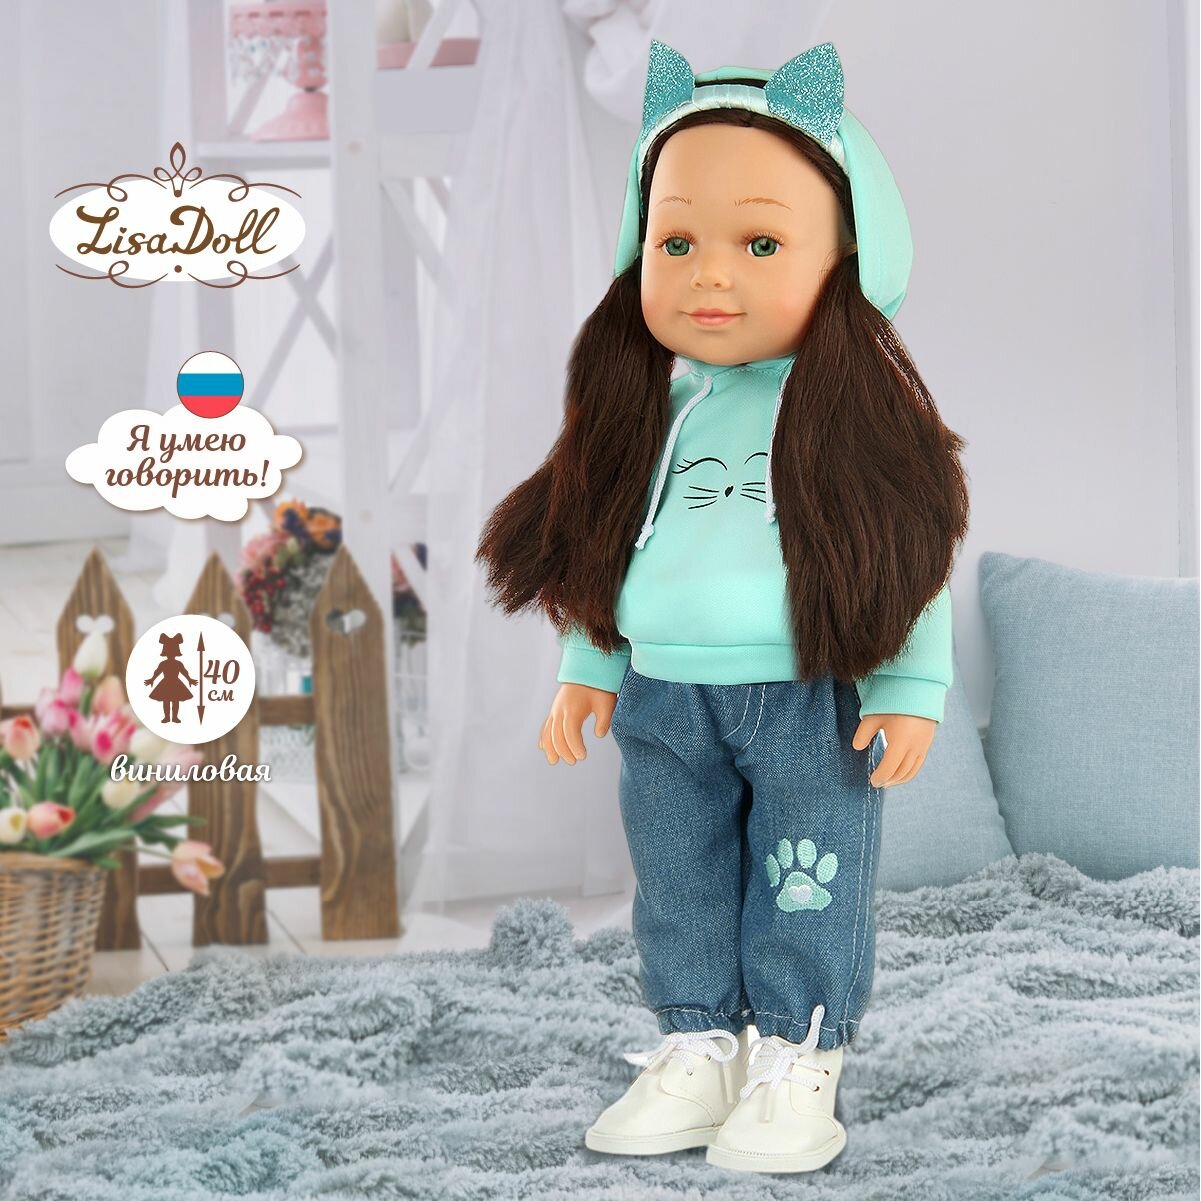 Кукла интерактивная со звуком Лея 40 см, Lisa Doll / Куколка с русской озвучкой / Коллекционная виниловая кукла для девочек